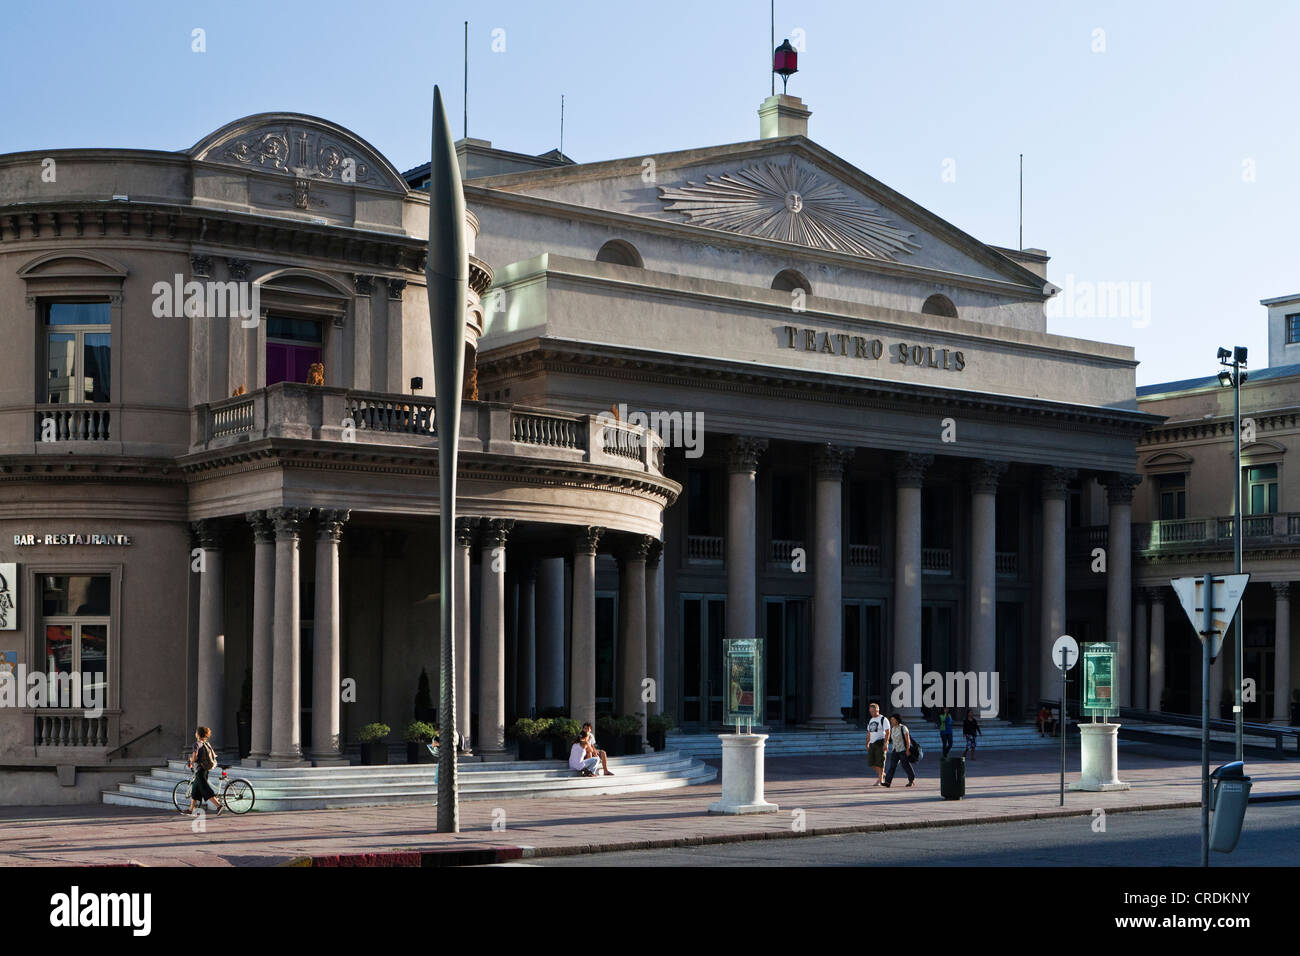 Teatro Solis, théâtre Solis, le plus ancien théâtre de l'Uruguay, construit en 1856, à la Plaza Independencia, Montevideo, Uruguay Banque D'Images